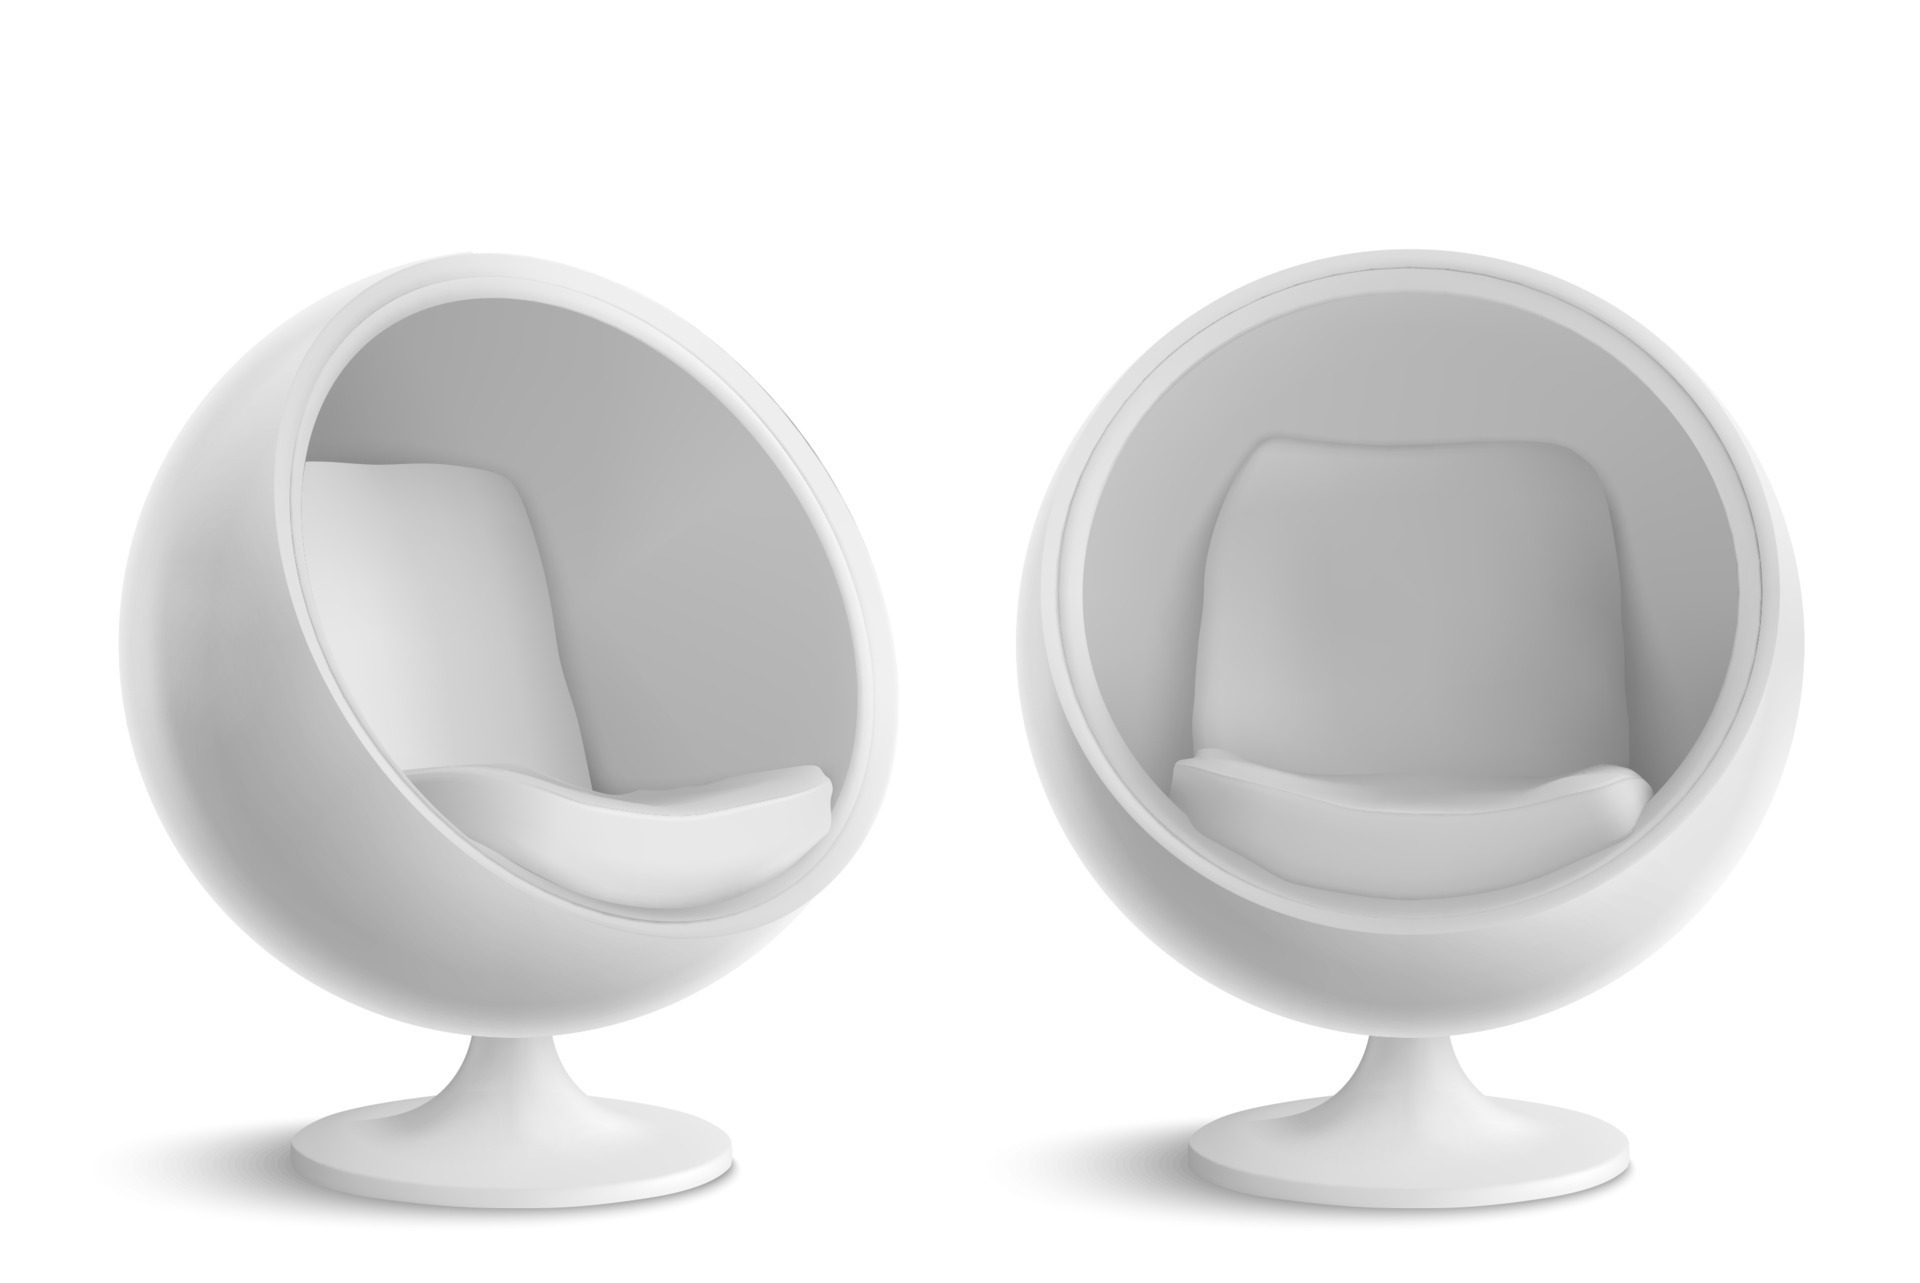 saai Speeltoestellen gebruiker wit bal stoel, ontwerpers ei fauteuil 15117526 - Download Free Vectors,  Vector Bestanden, Ontwerpen Templates